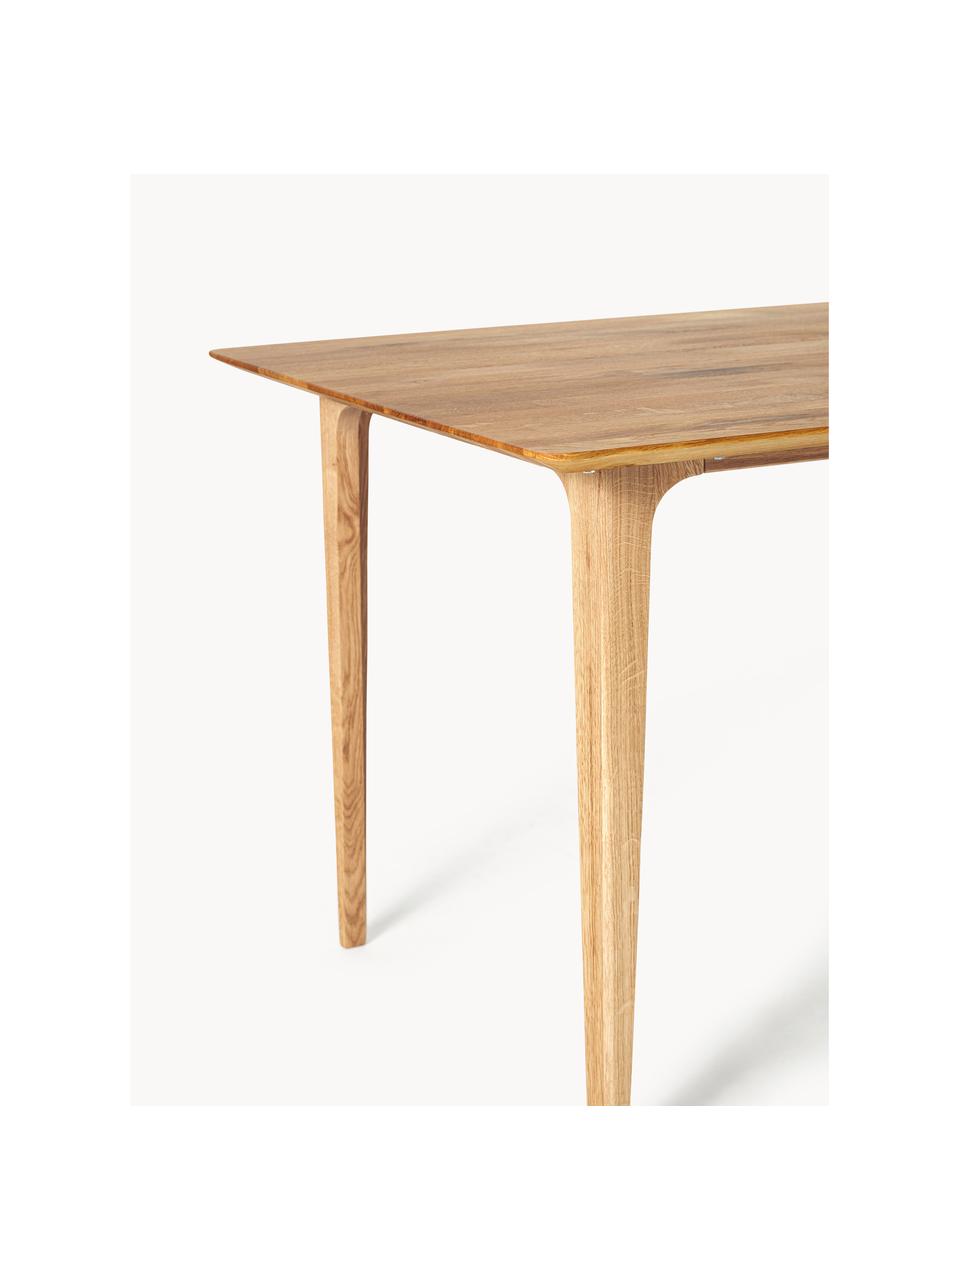 Table en chêne Archie, tailles variées, Bois de chêne, huilé, certifié FSC, Chêne, huilé, larg. 180 x prof. 90 cm